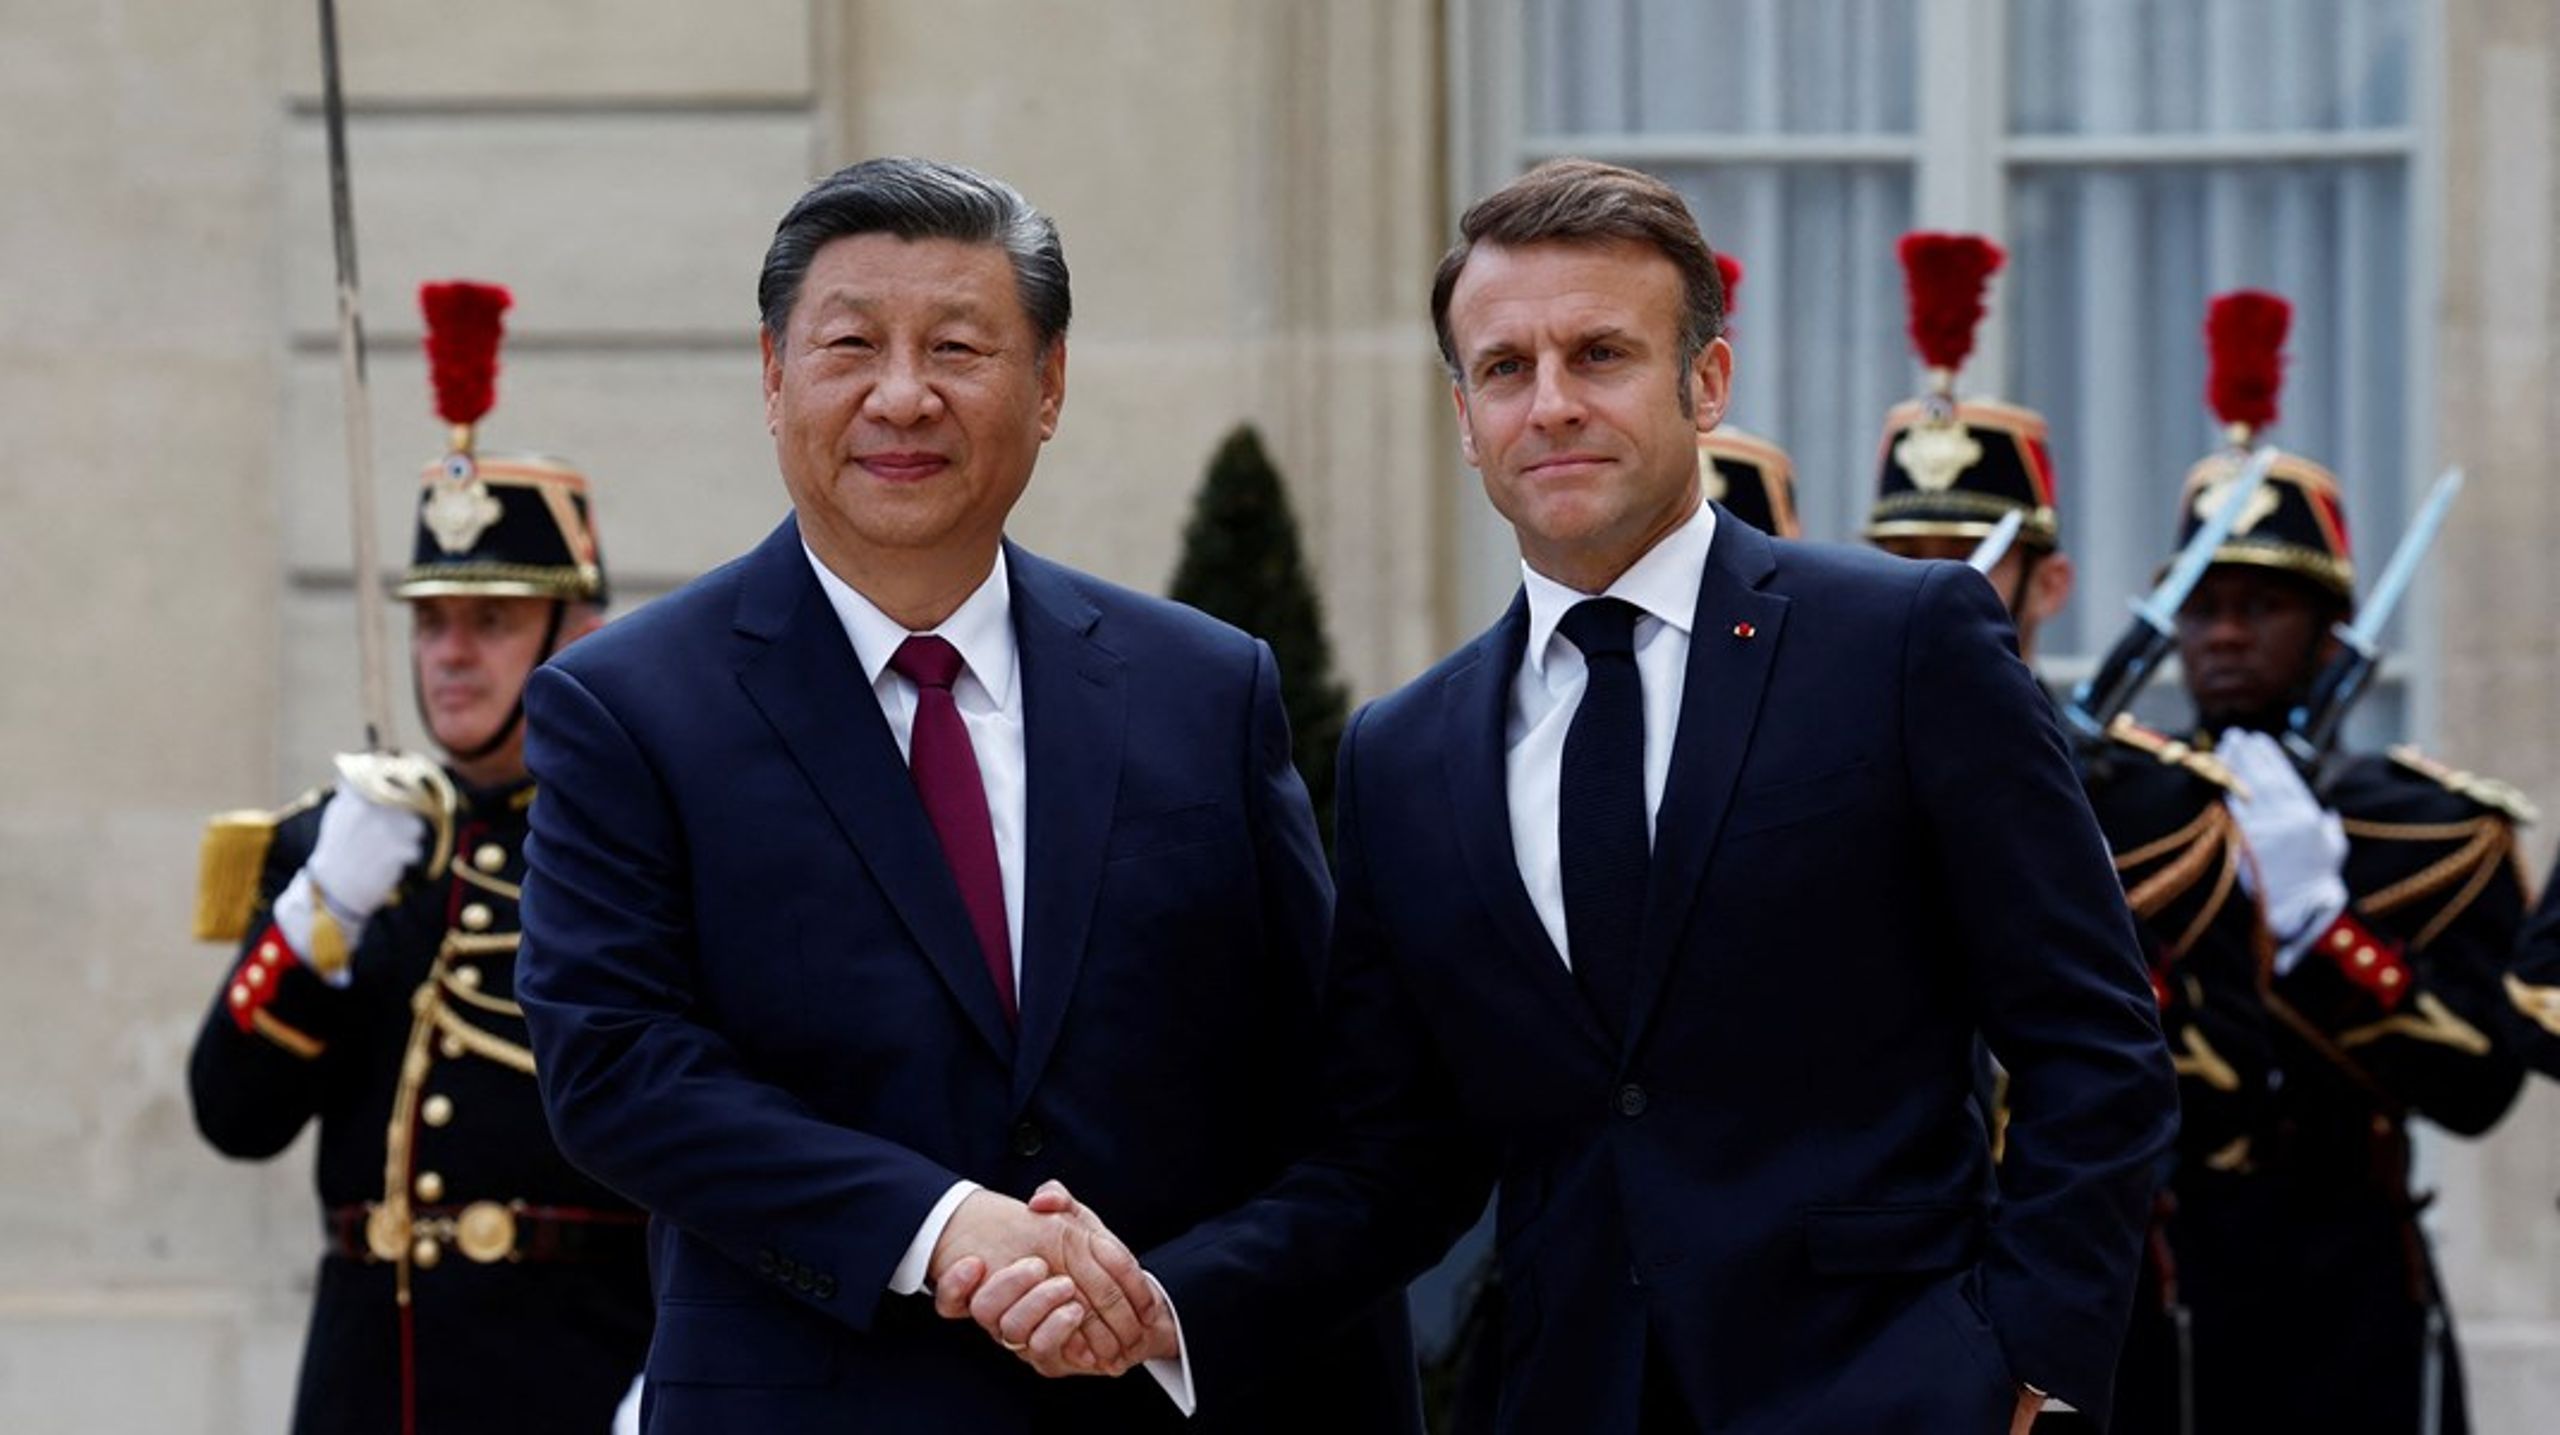 Denne uken reiser en rekke statsledere på offisielle statsbesøk i våre nærområder. Mandag kunne Frankrikes president Emmanuel Macron hilse den kinesiske presidenten Xi Jinping velkommen til Paris.